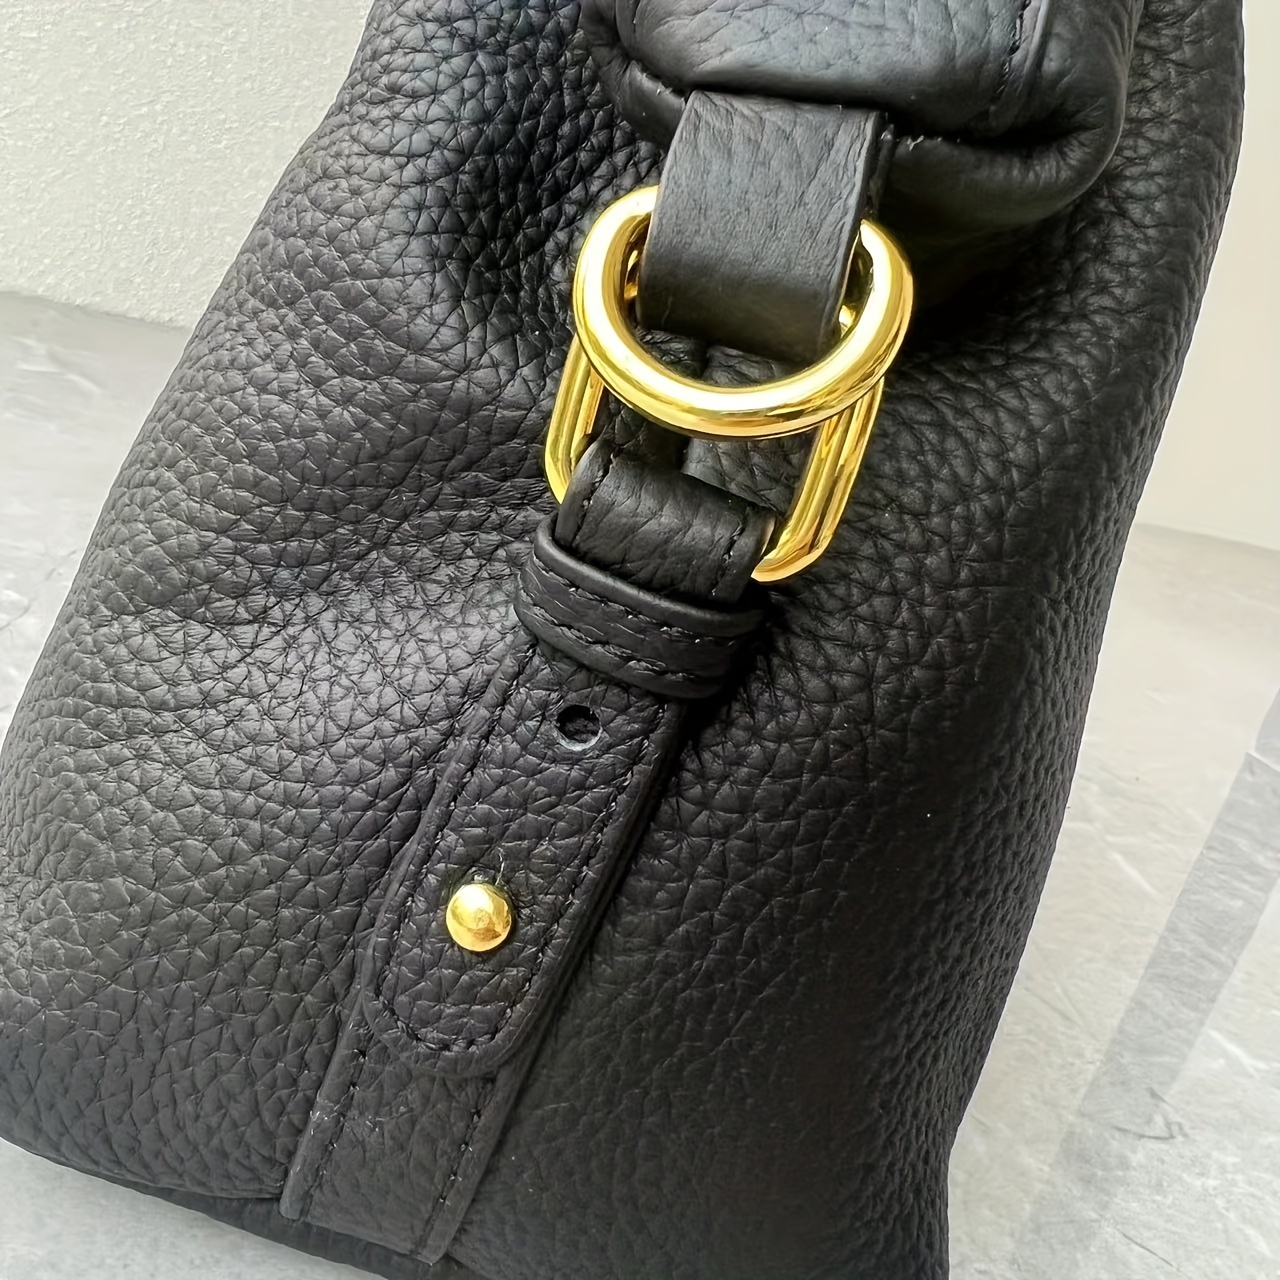 Black Leather Clutch Bag W/ Wrist Strap Fashion Purse Small 